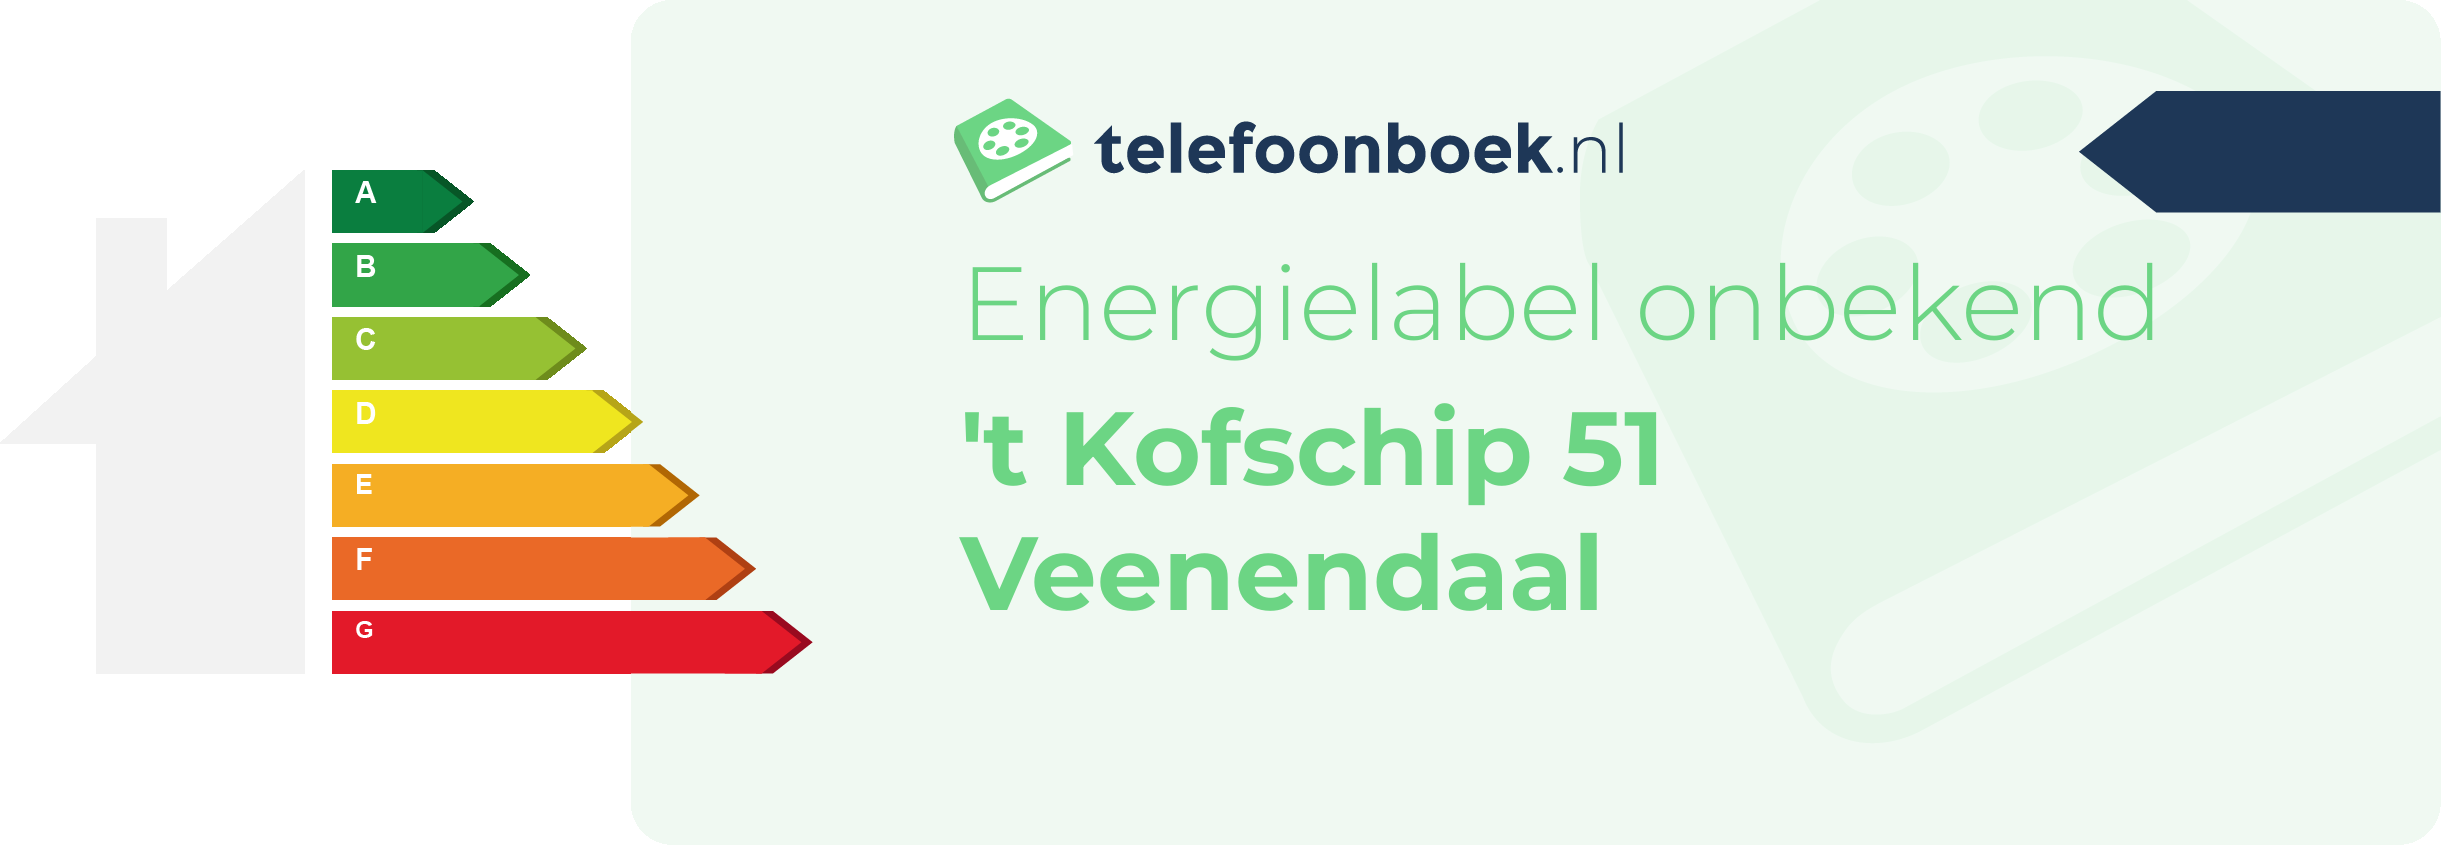 Energielabel 't Kofschip 51 Veenendaal